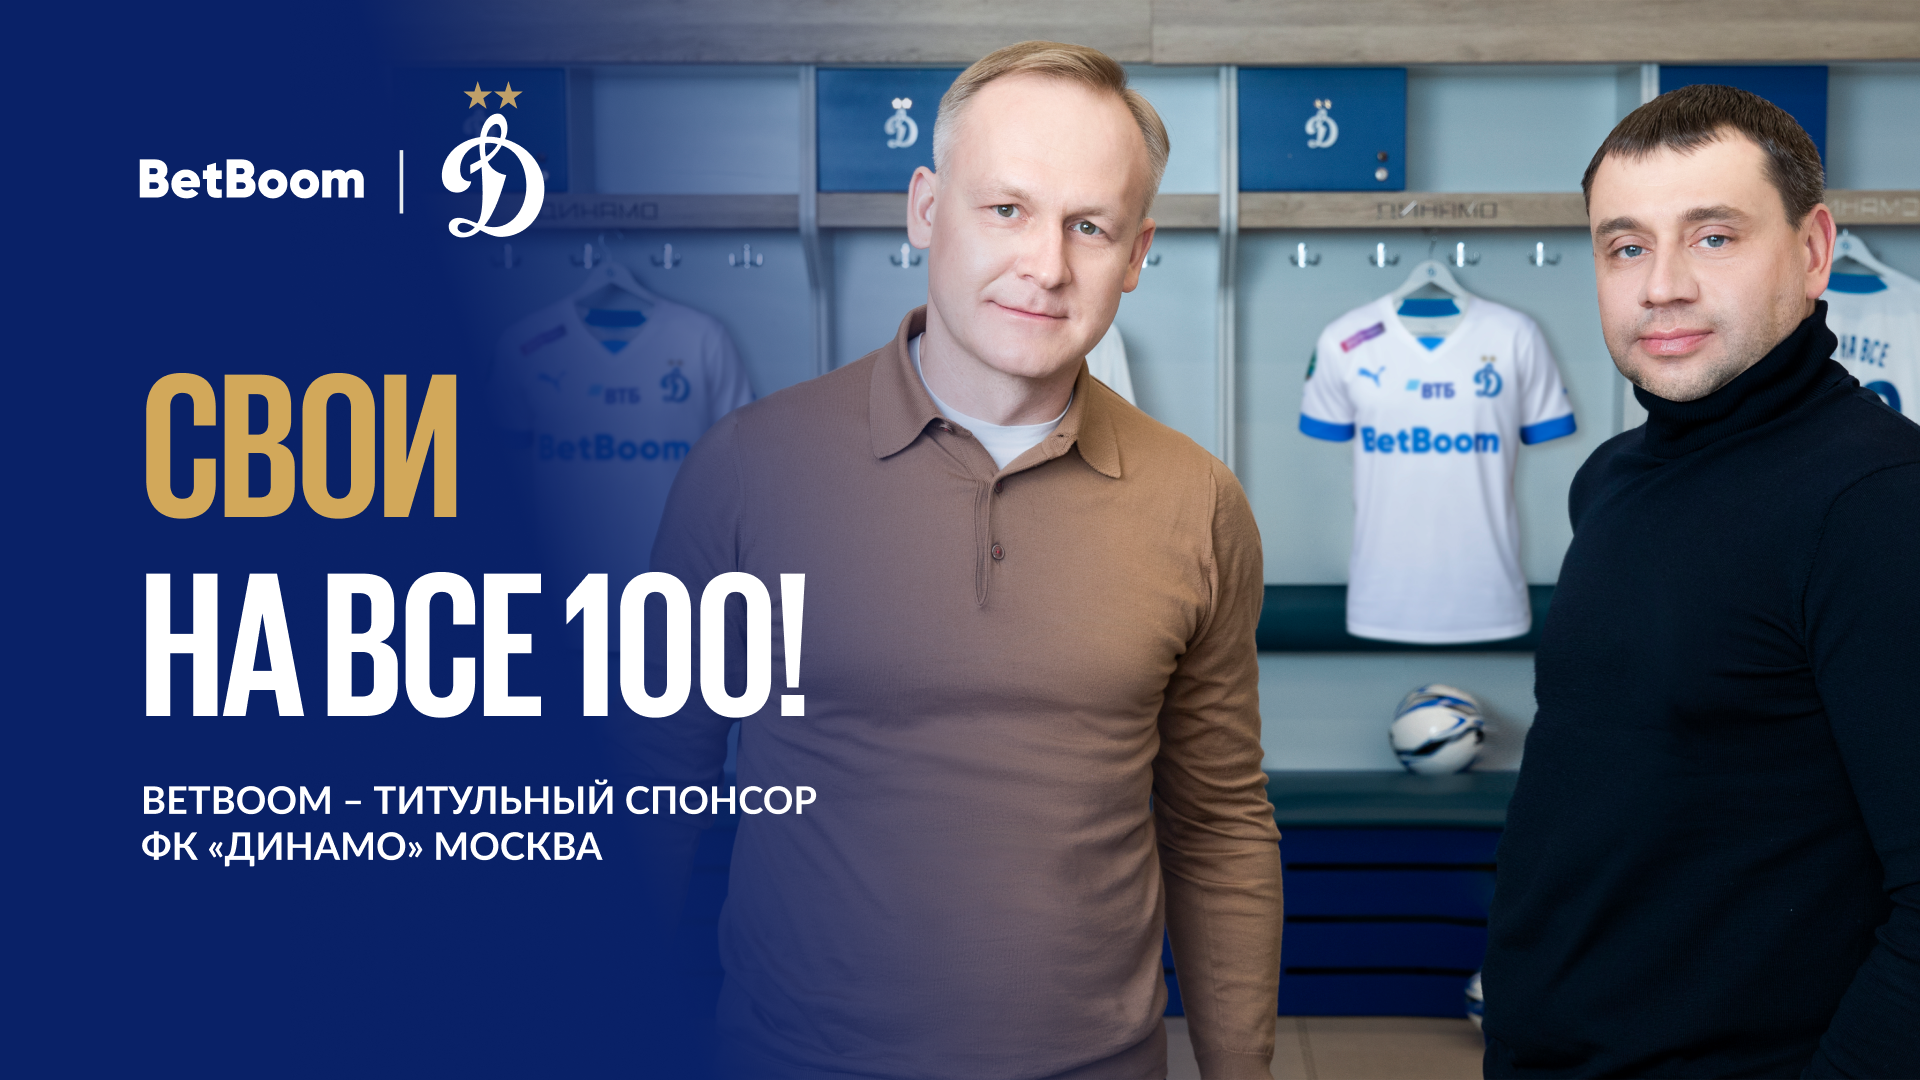 BetBoom стал титульным спонсором московского «Динамо». Это рекордный контракт для российского футбола